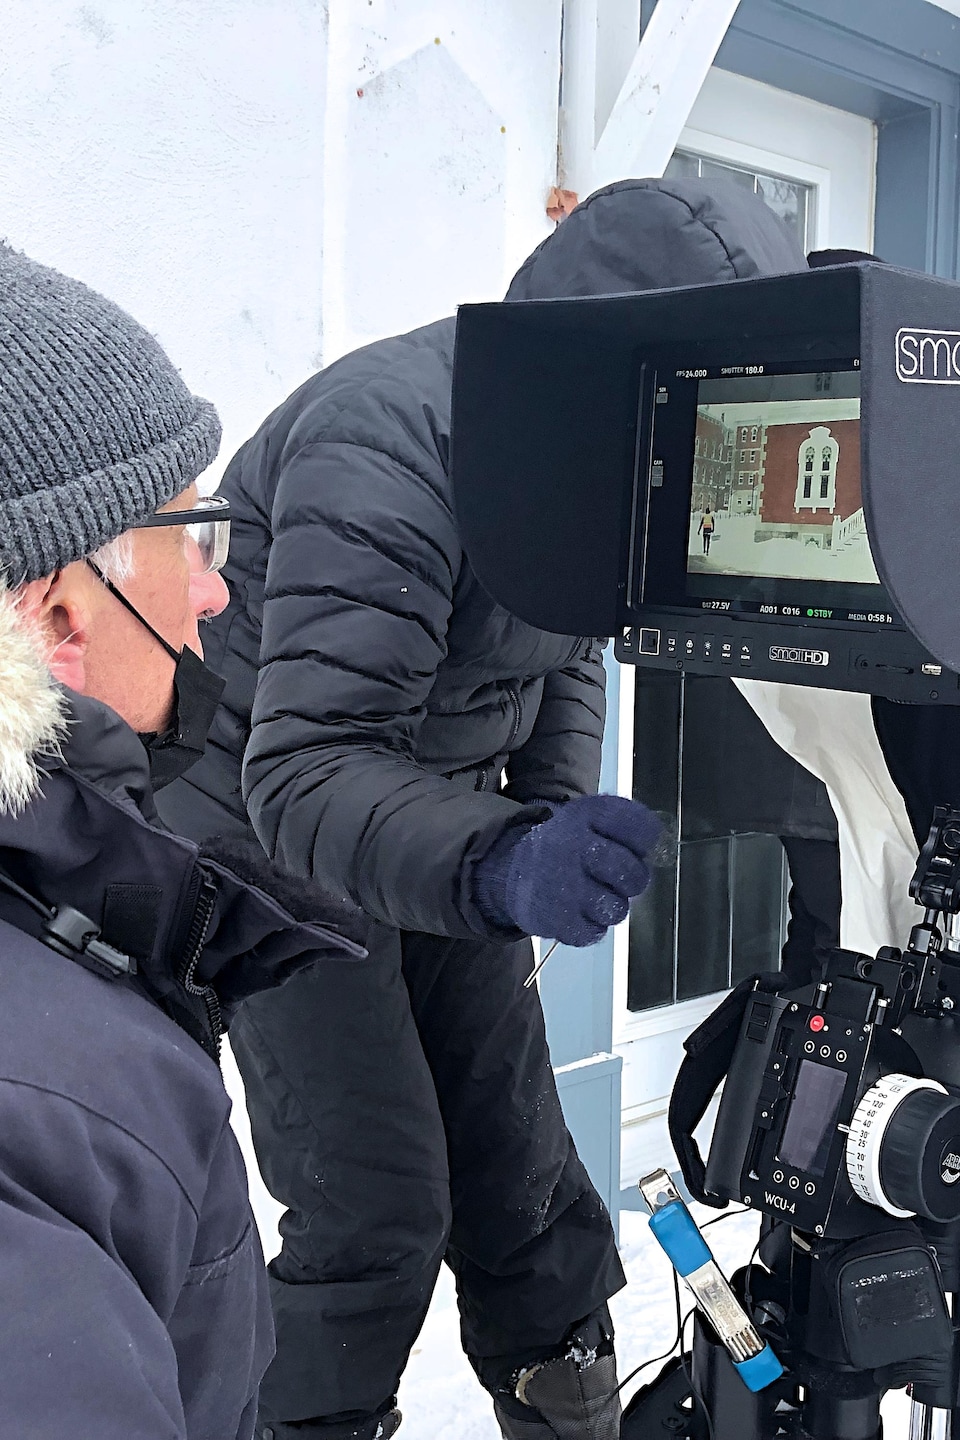 Assis à l’extérieur avec son manteau d’hiver, le réalisateur du film, Bernard Émond, regarde à travers une caméra l’image de la maison de son personnage principal.